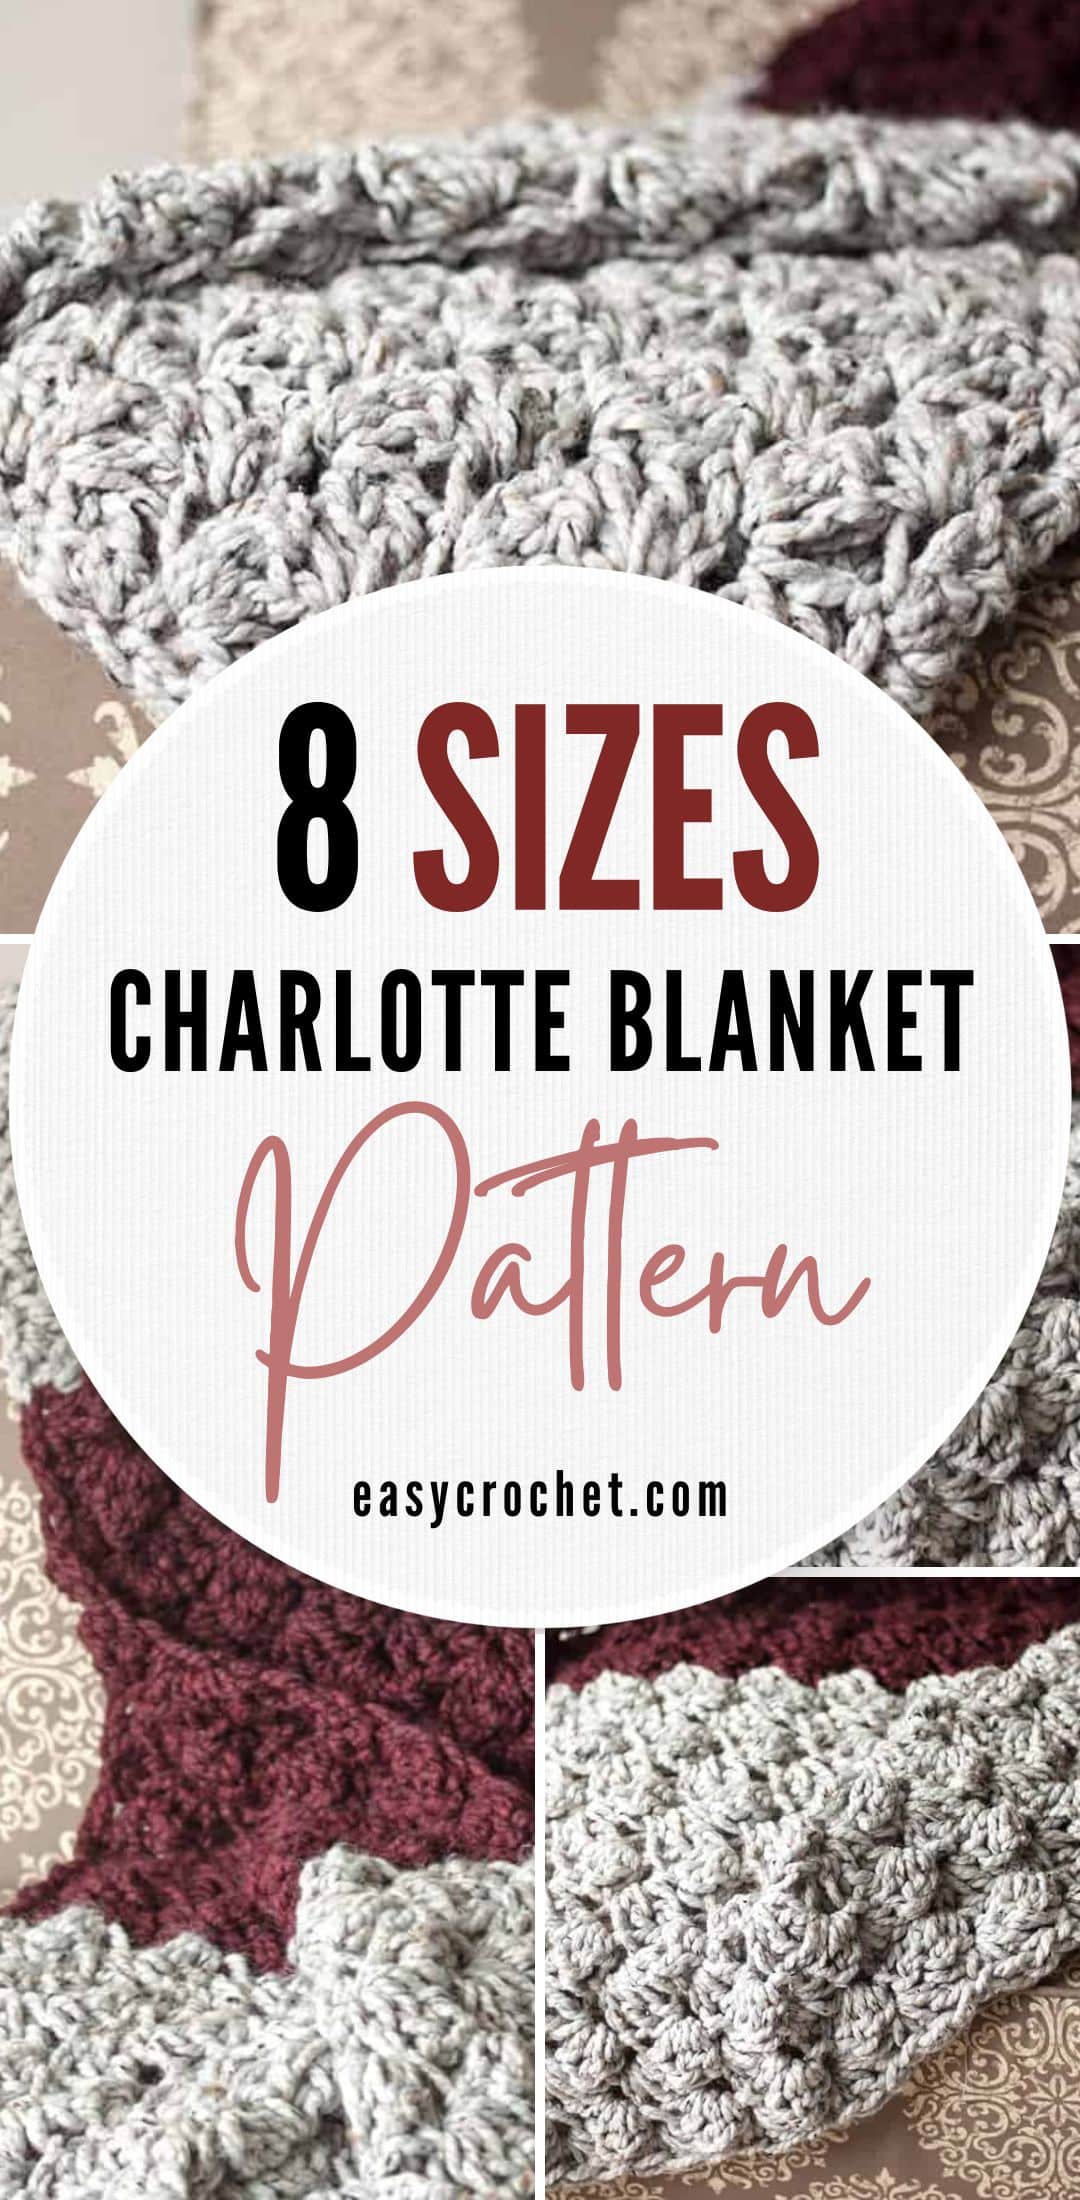 charlotte blanket pattern a free crochet pattern